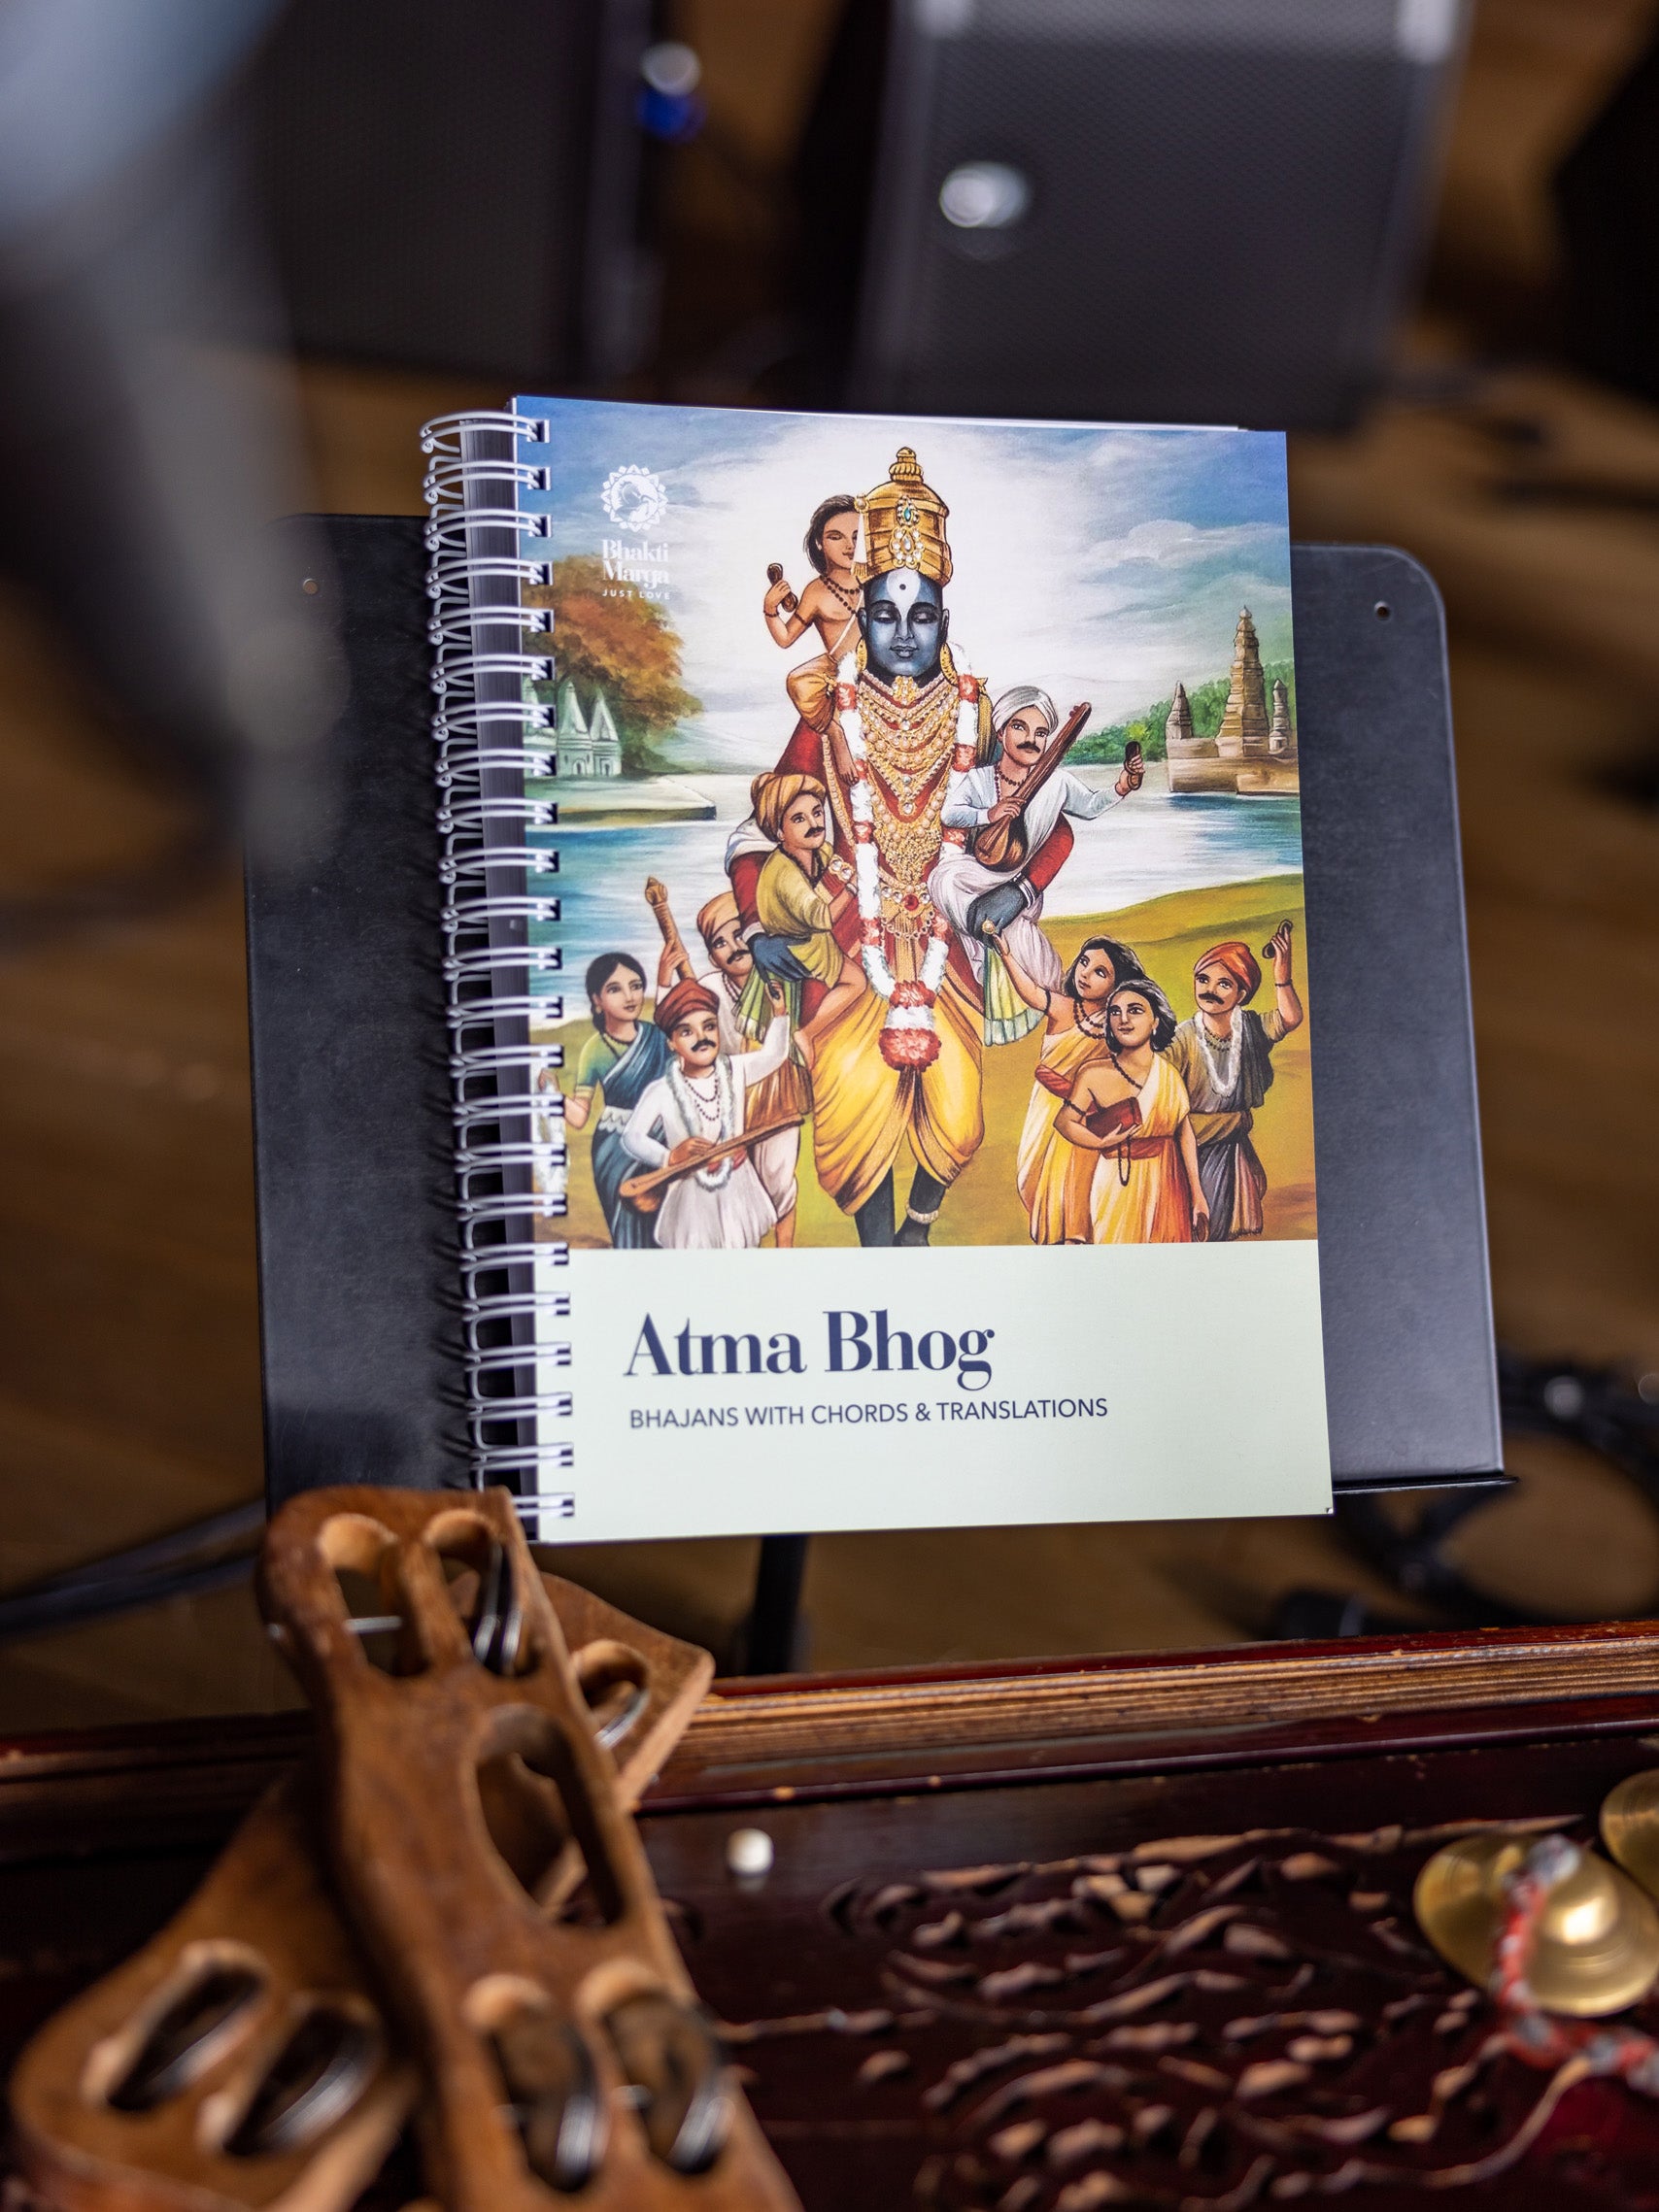 Atma Bhog: Bhajans with Chords & Translations